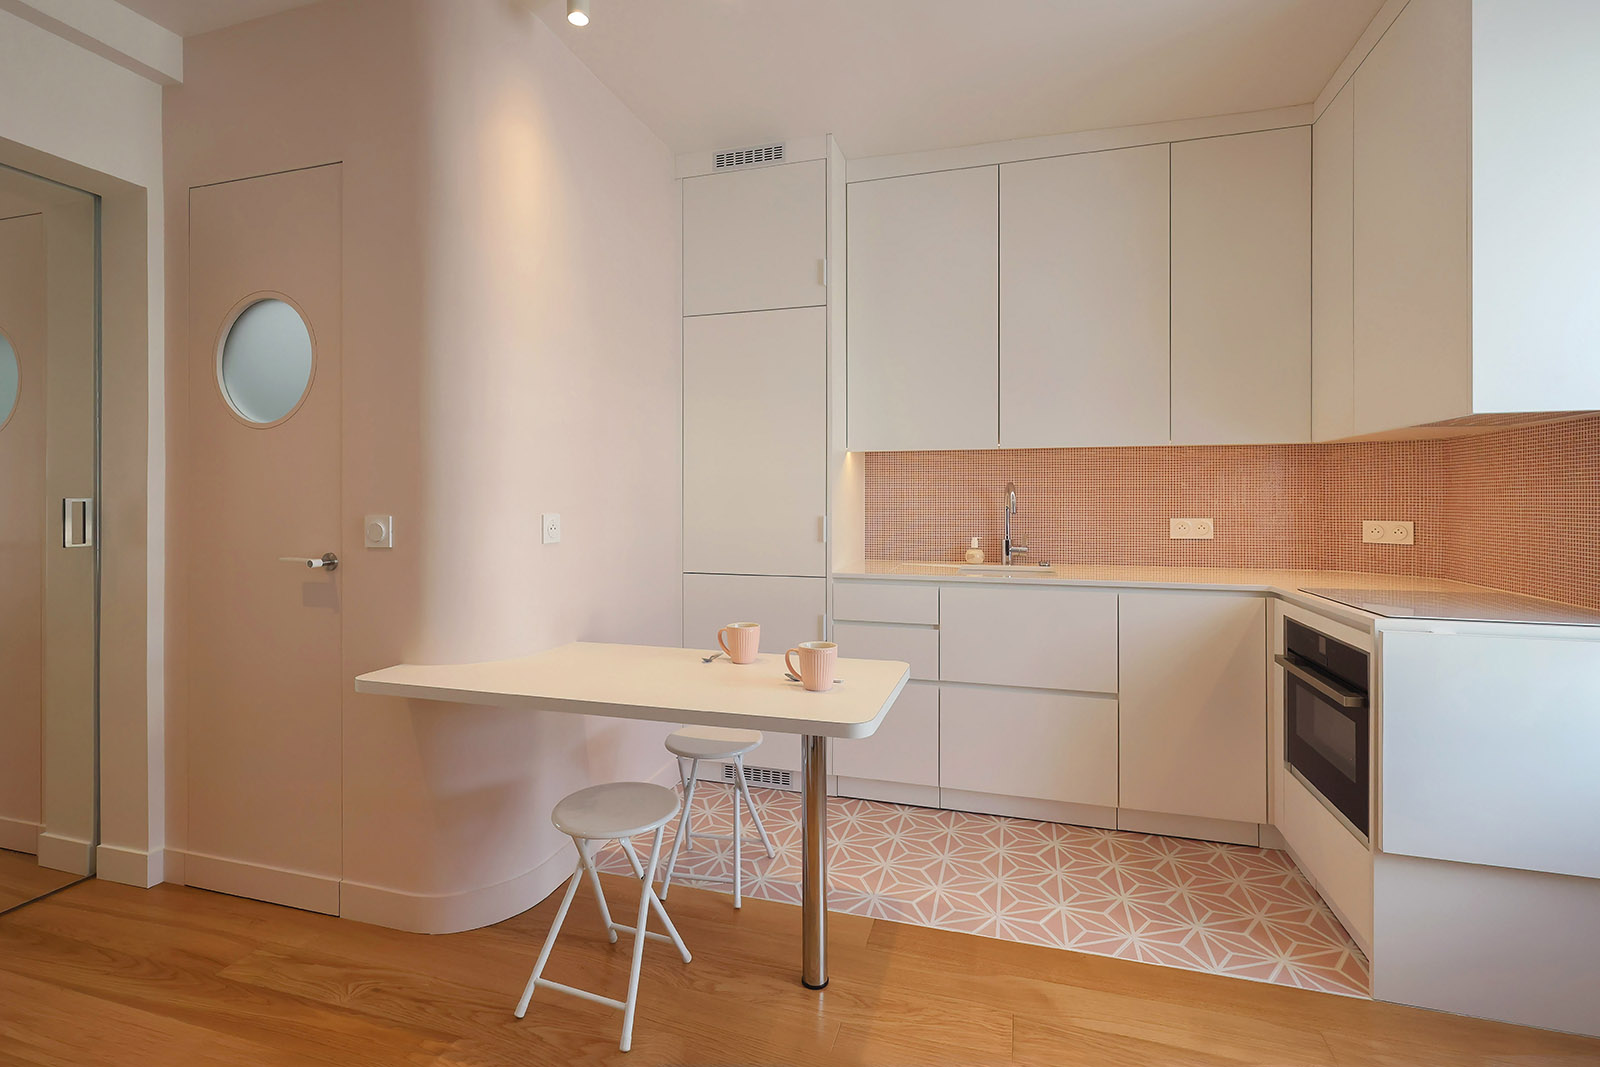 25 m2 - La cuisine entièrement équipée - Flora Auvray Architecte d'intérieur